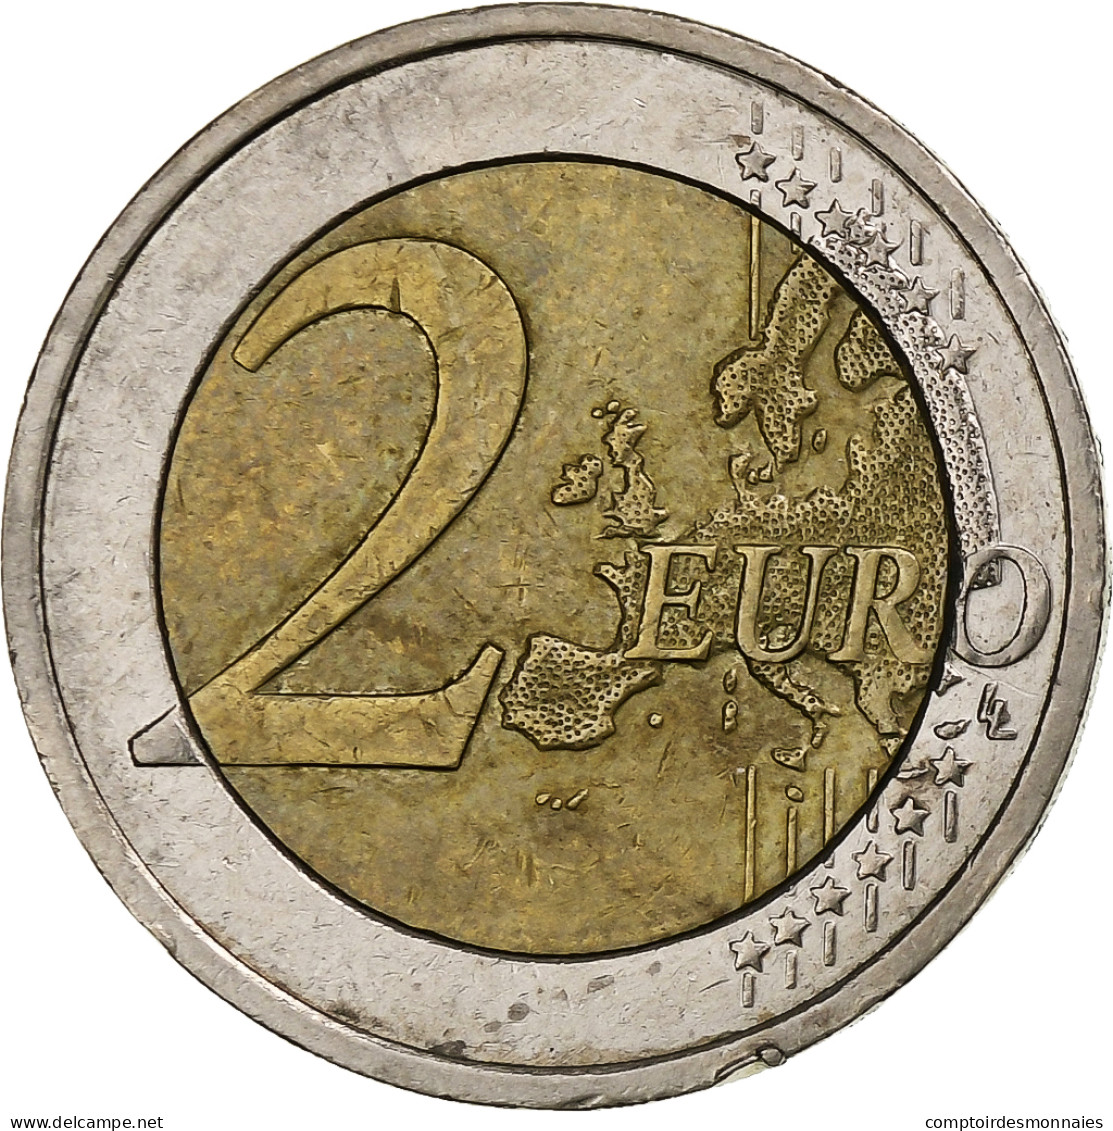 Slovaquie, 2 Euro, 2009, Kremnica, TTB, Bimétallique, KM:102 - Slovakia